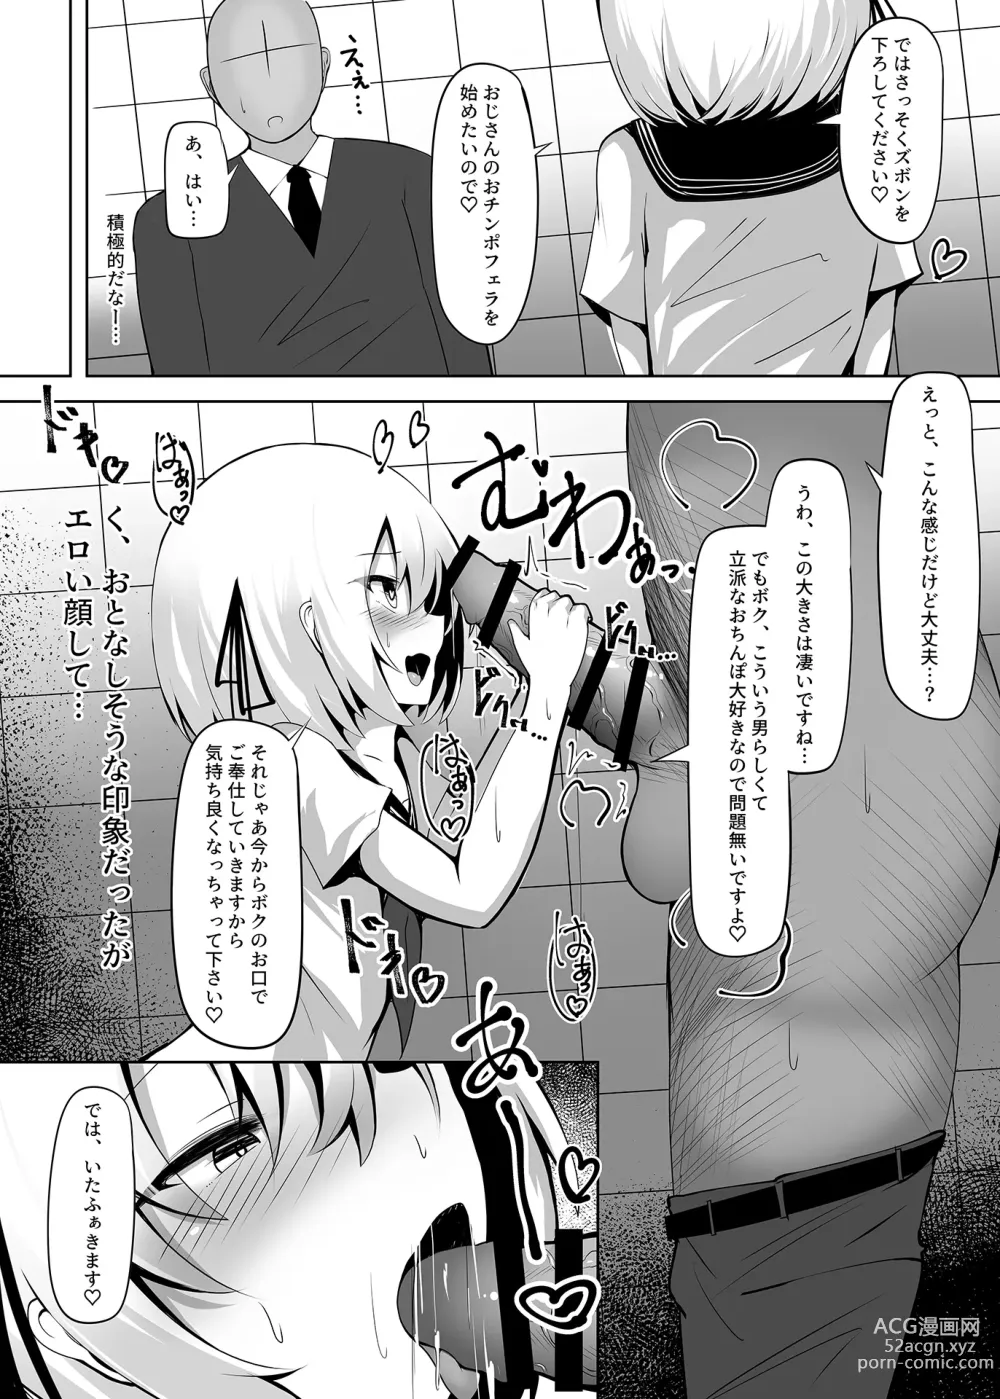 Page 5 of doujinshi Boku, Onnanoko da to wa Ittenai desu yo?